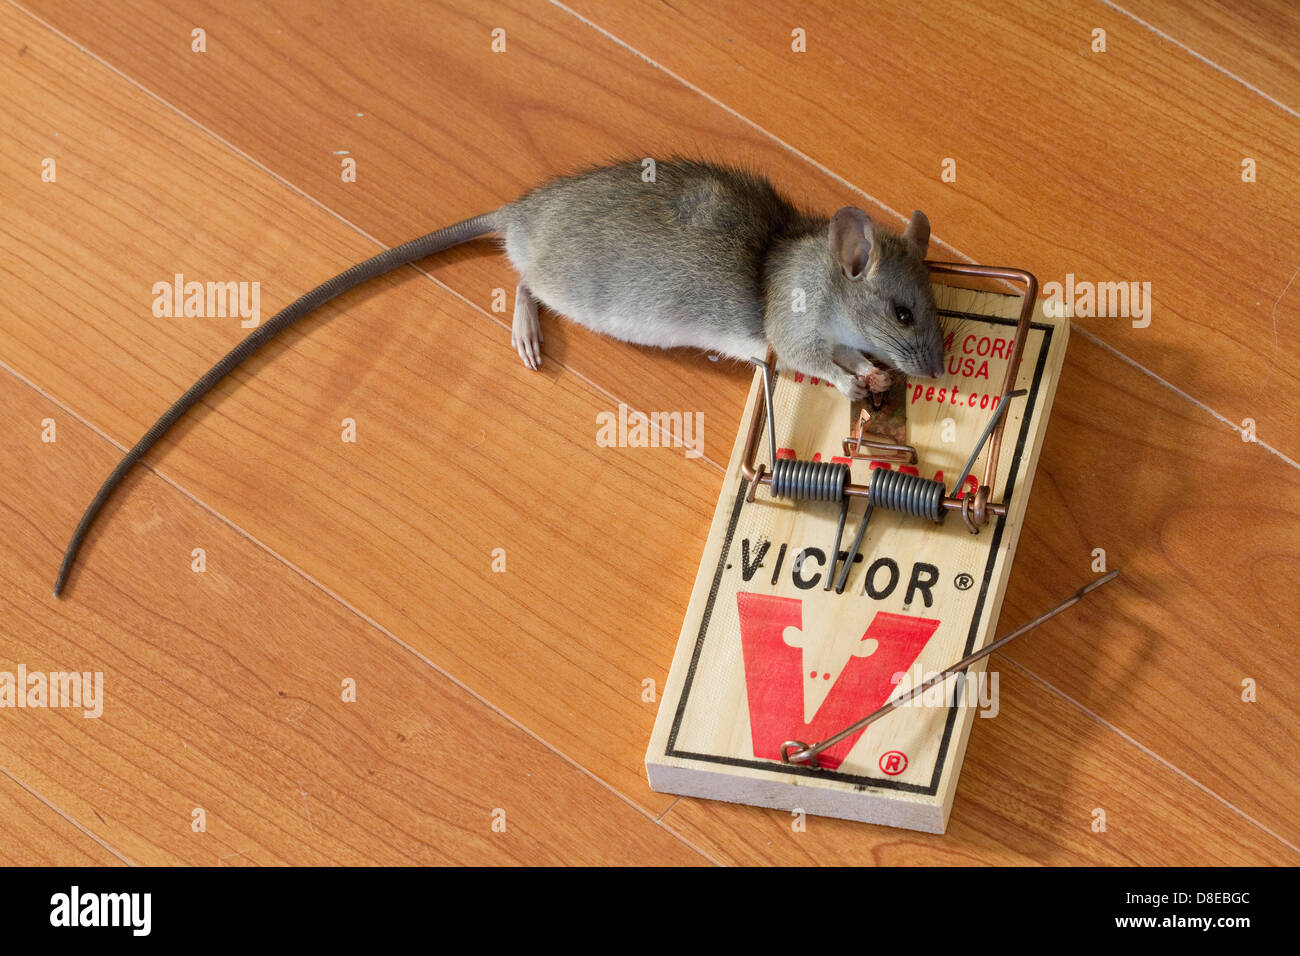 https://c8.alamy.com/comp/D8EBGC/rat-trap-with-caught-black-rat-rattus-rattus-florida-usa-D8EBGC.jpg